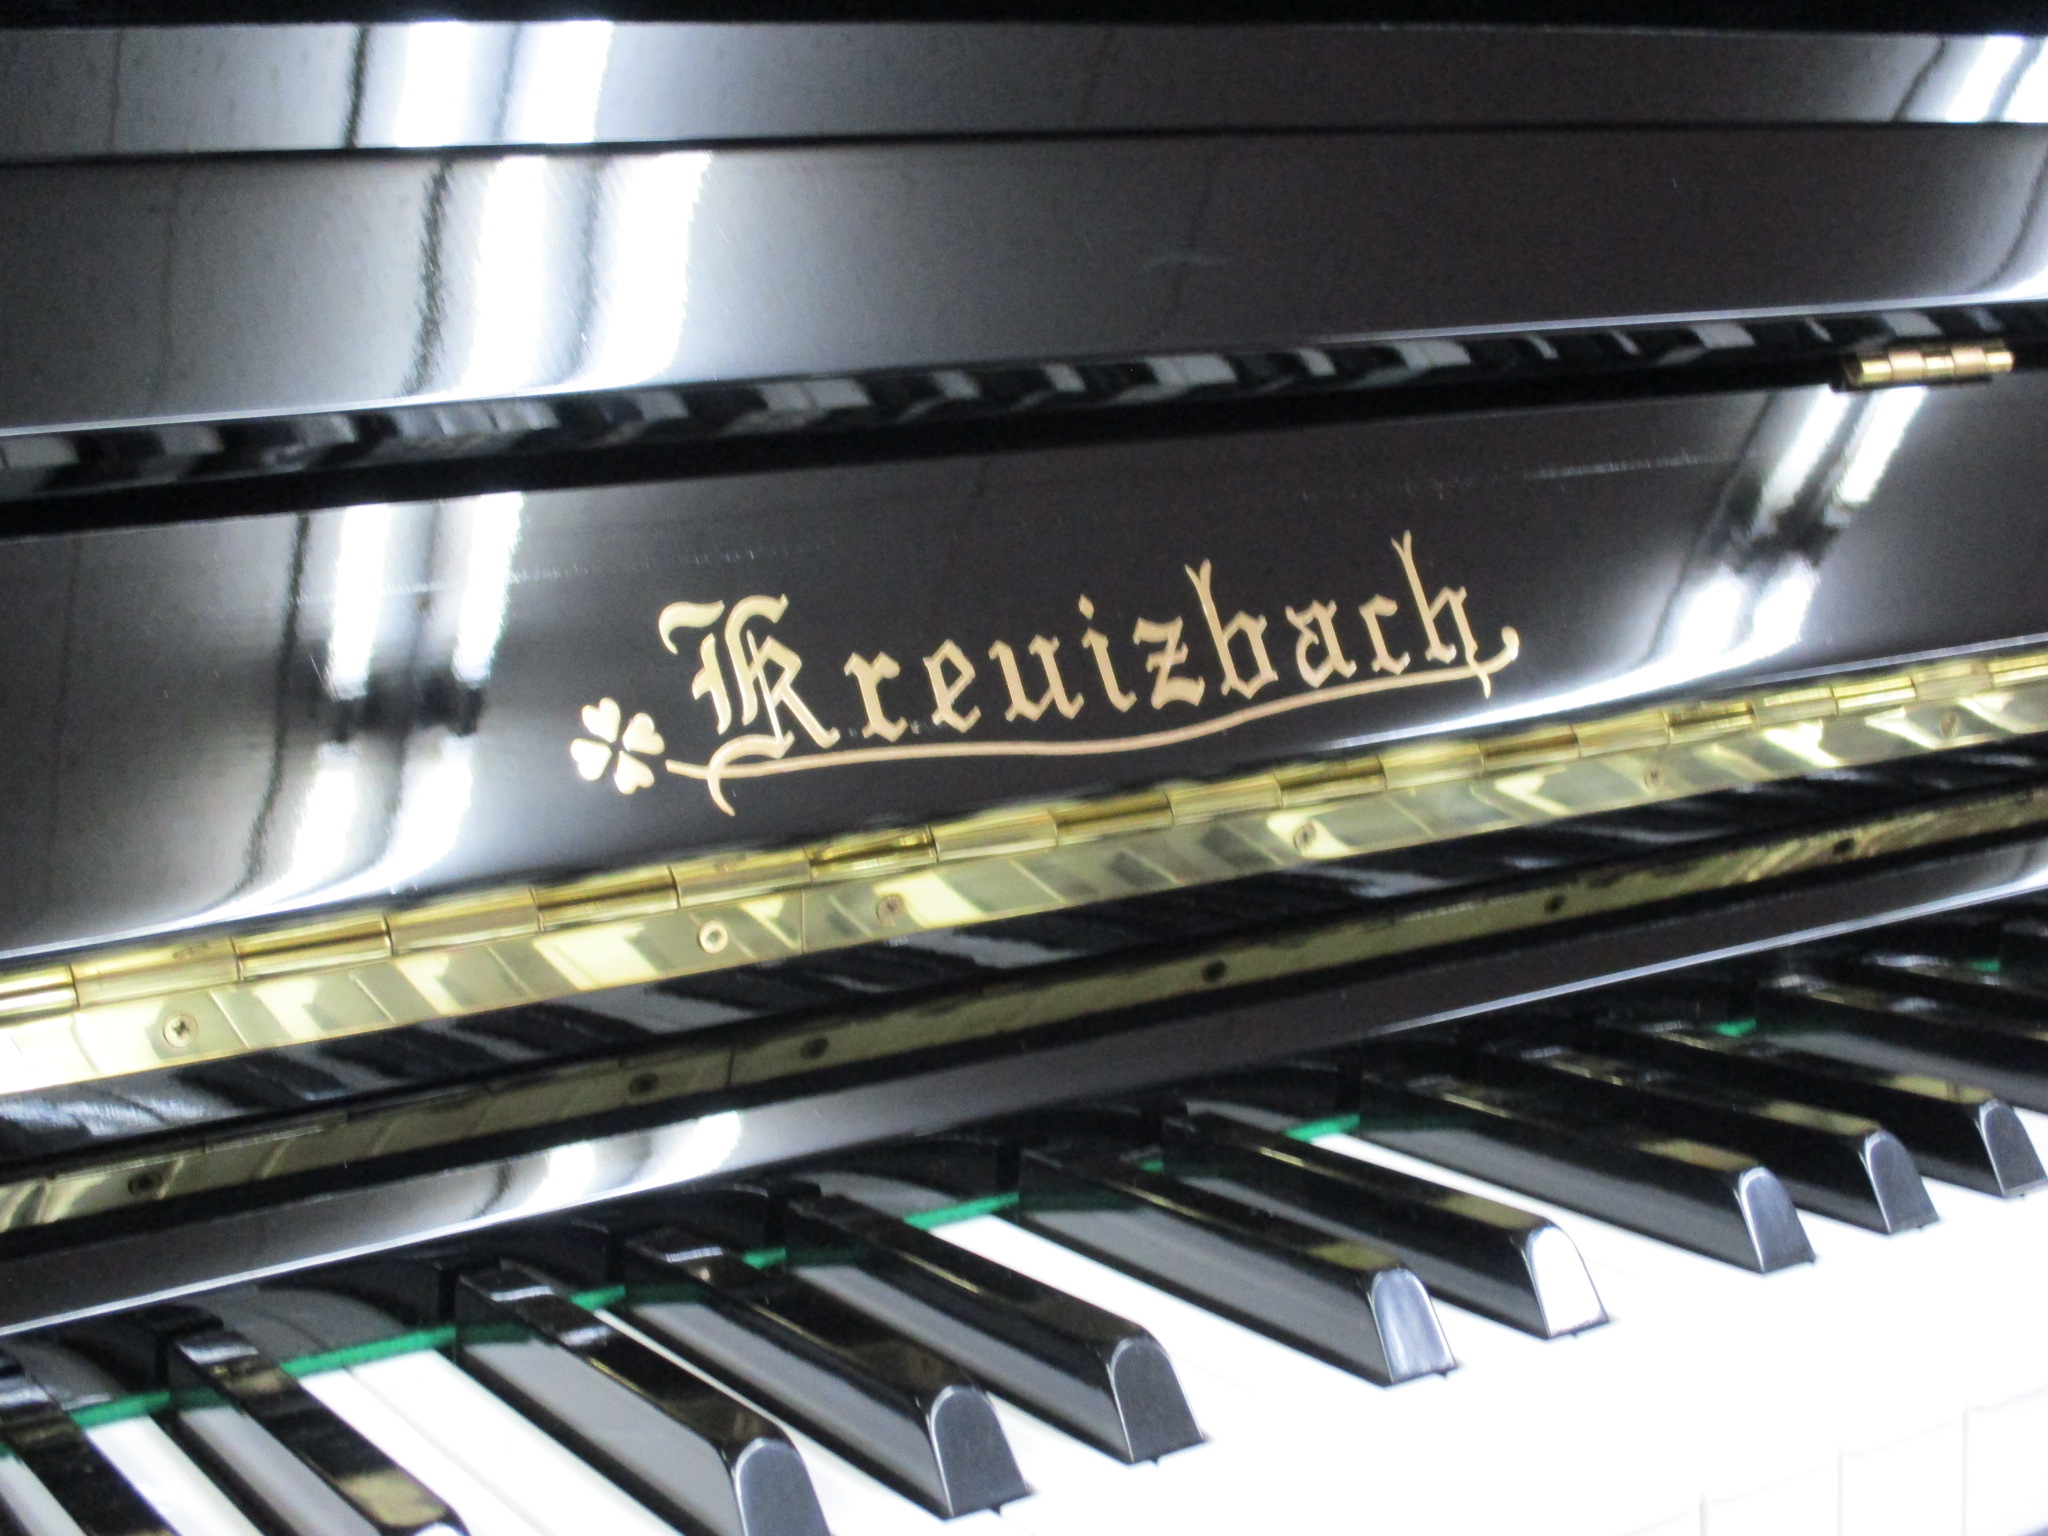 中古アップライトピアノ Kreuizbach U127